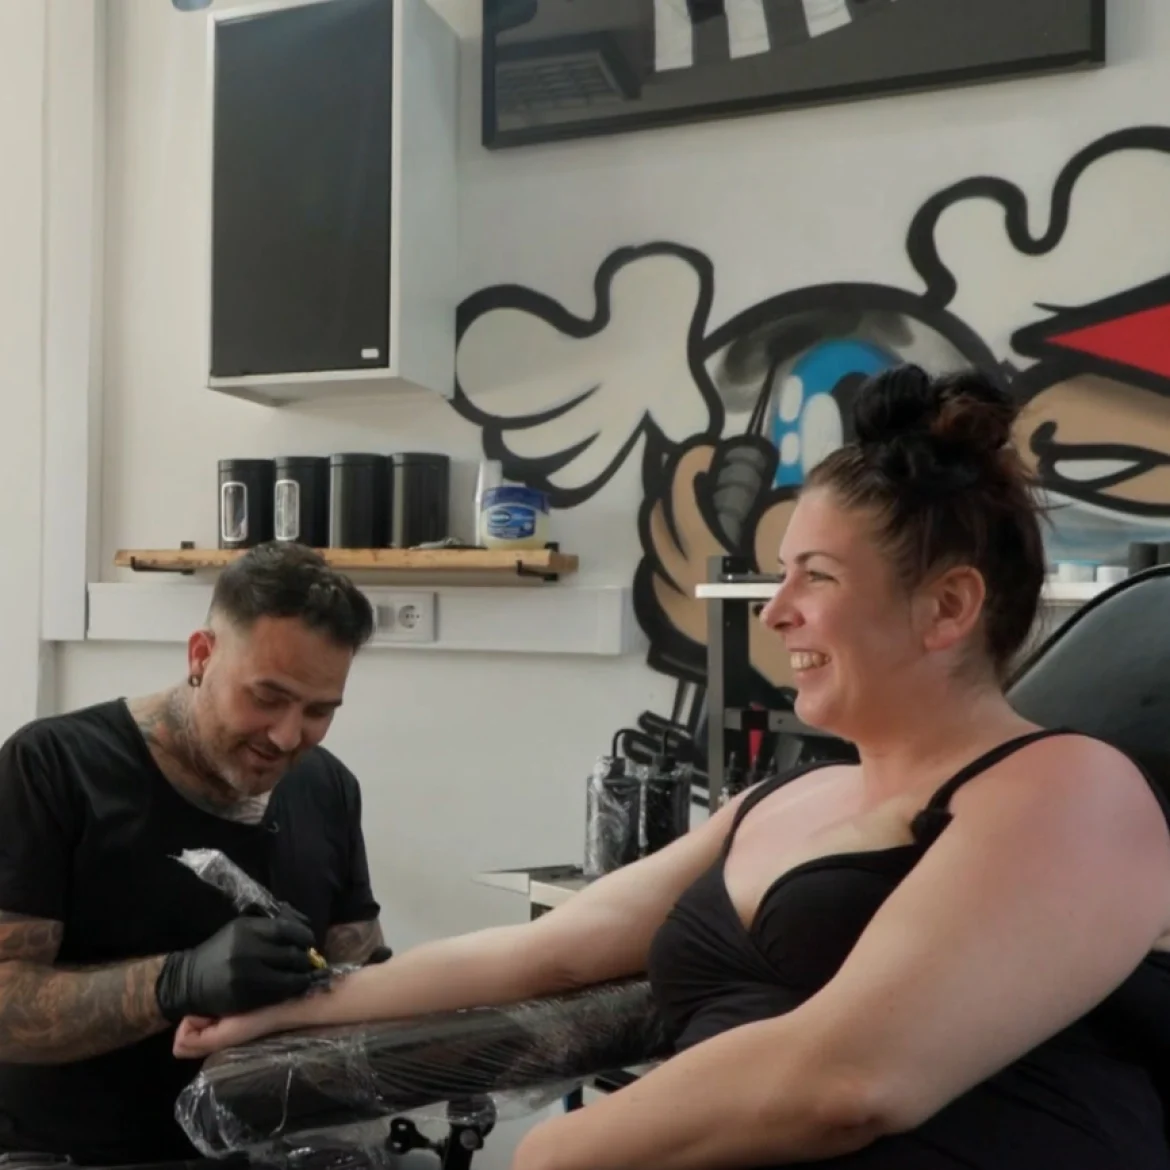 Tattooverwijdering betekent veel voor moeder en zoon in ‘Steenrijk, Straatarm': ‘Mooi begin’